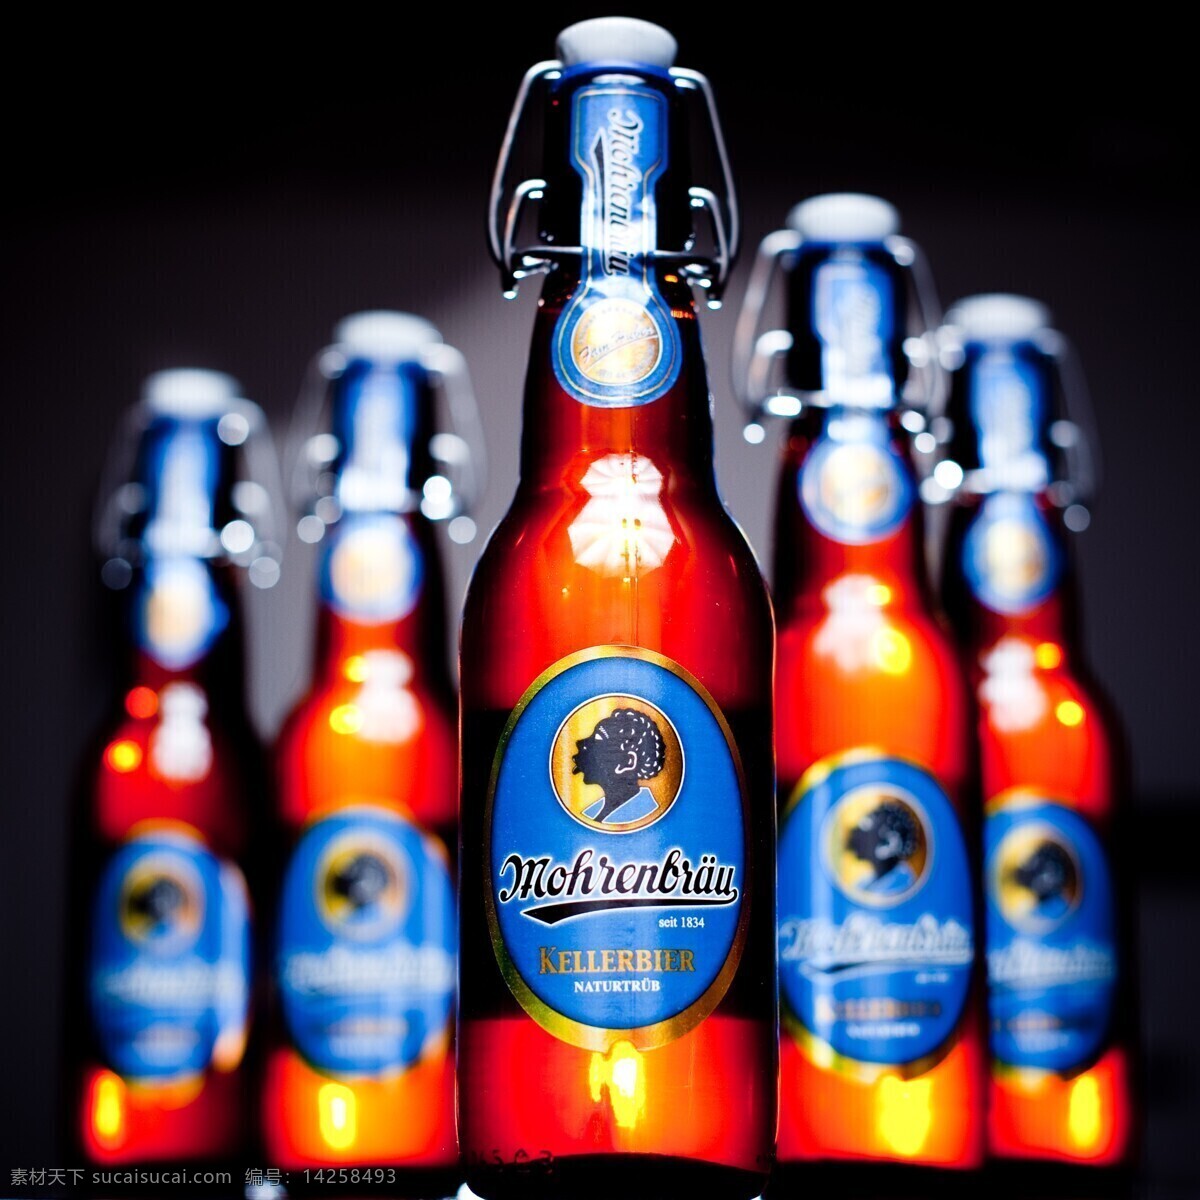 德国 monchshof kellerbier 猛士 窖藏 红啤 啤酒 洋品牌 瓶装啤酒 静物摄影 中外饮料酒水 饮料酒水 餐饮美食